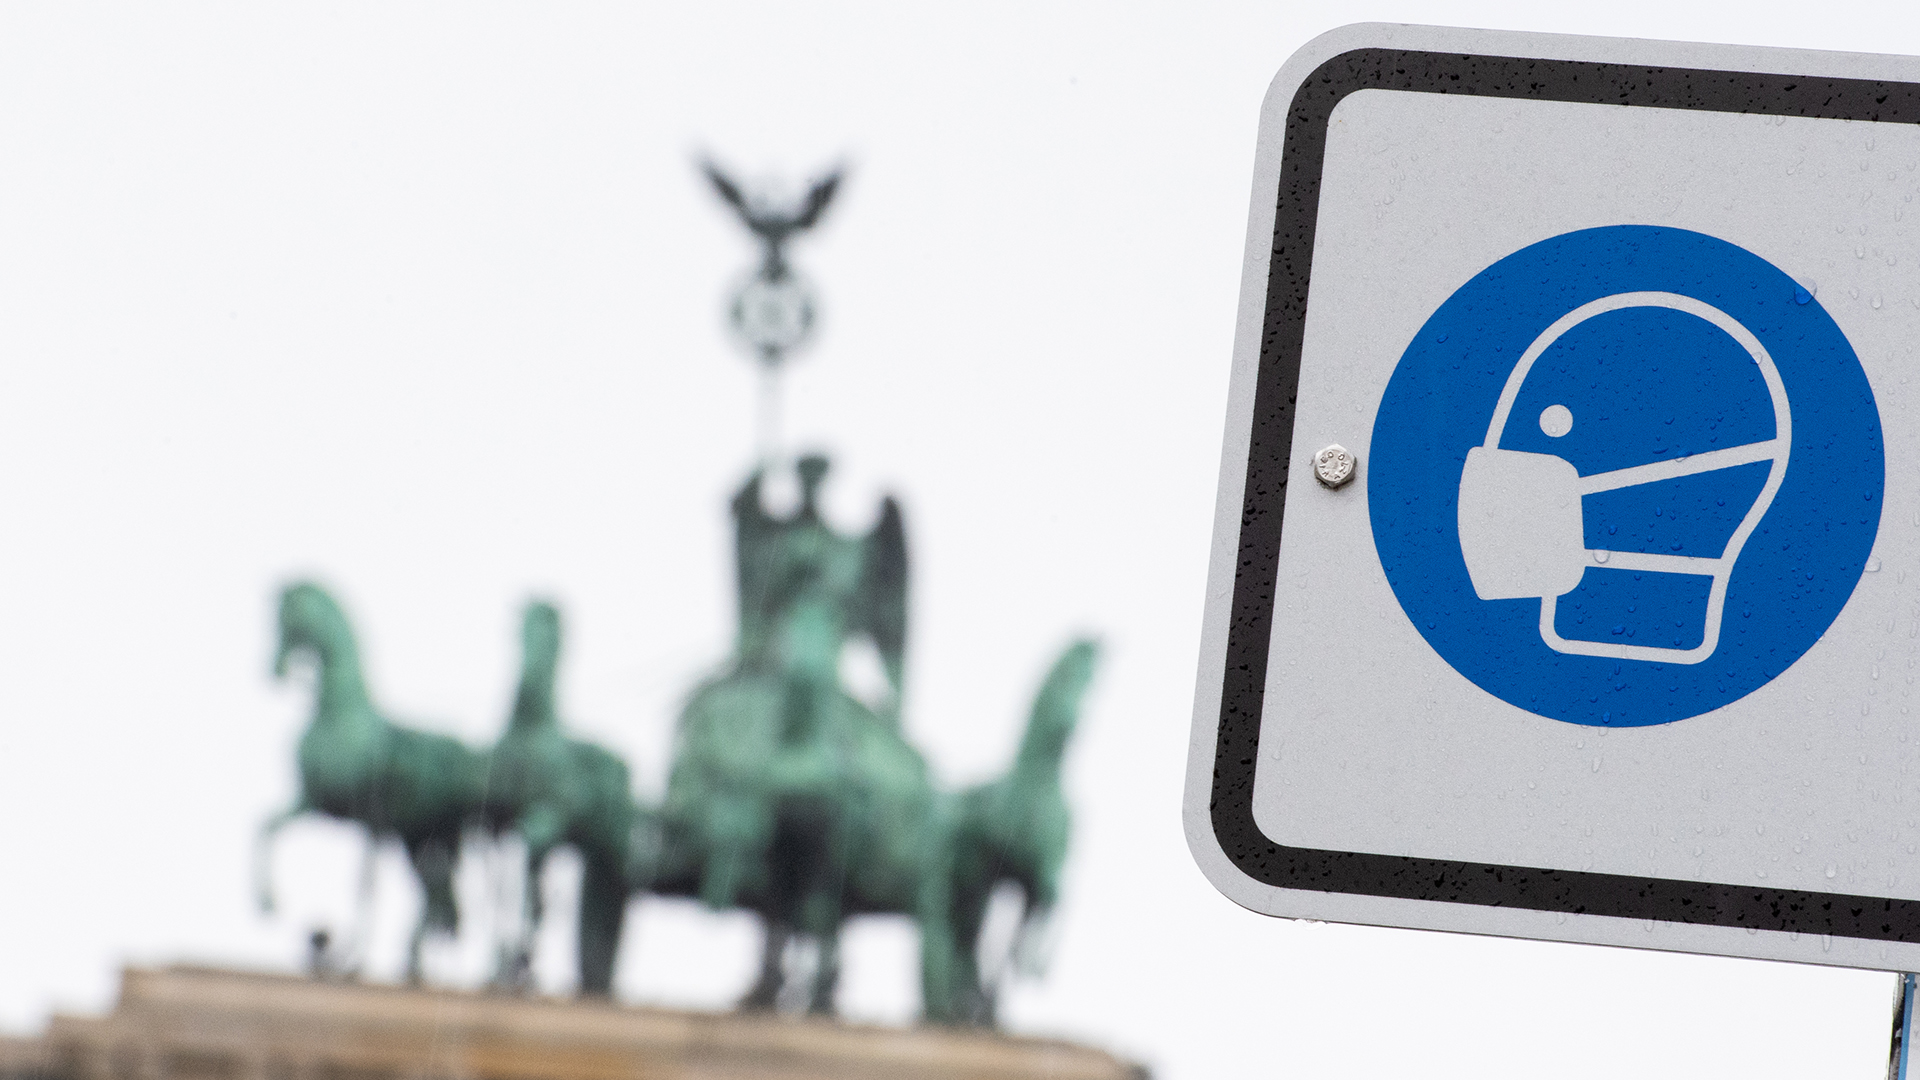 Am Pariser Platz vor dem Brandenburger Tor weist ein Hinweisschild auf die Maskenpflicht hin. (Archivbild) | dpa